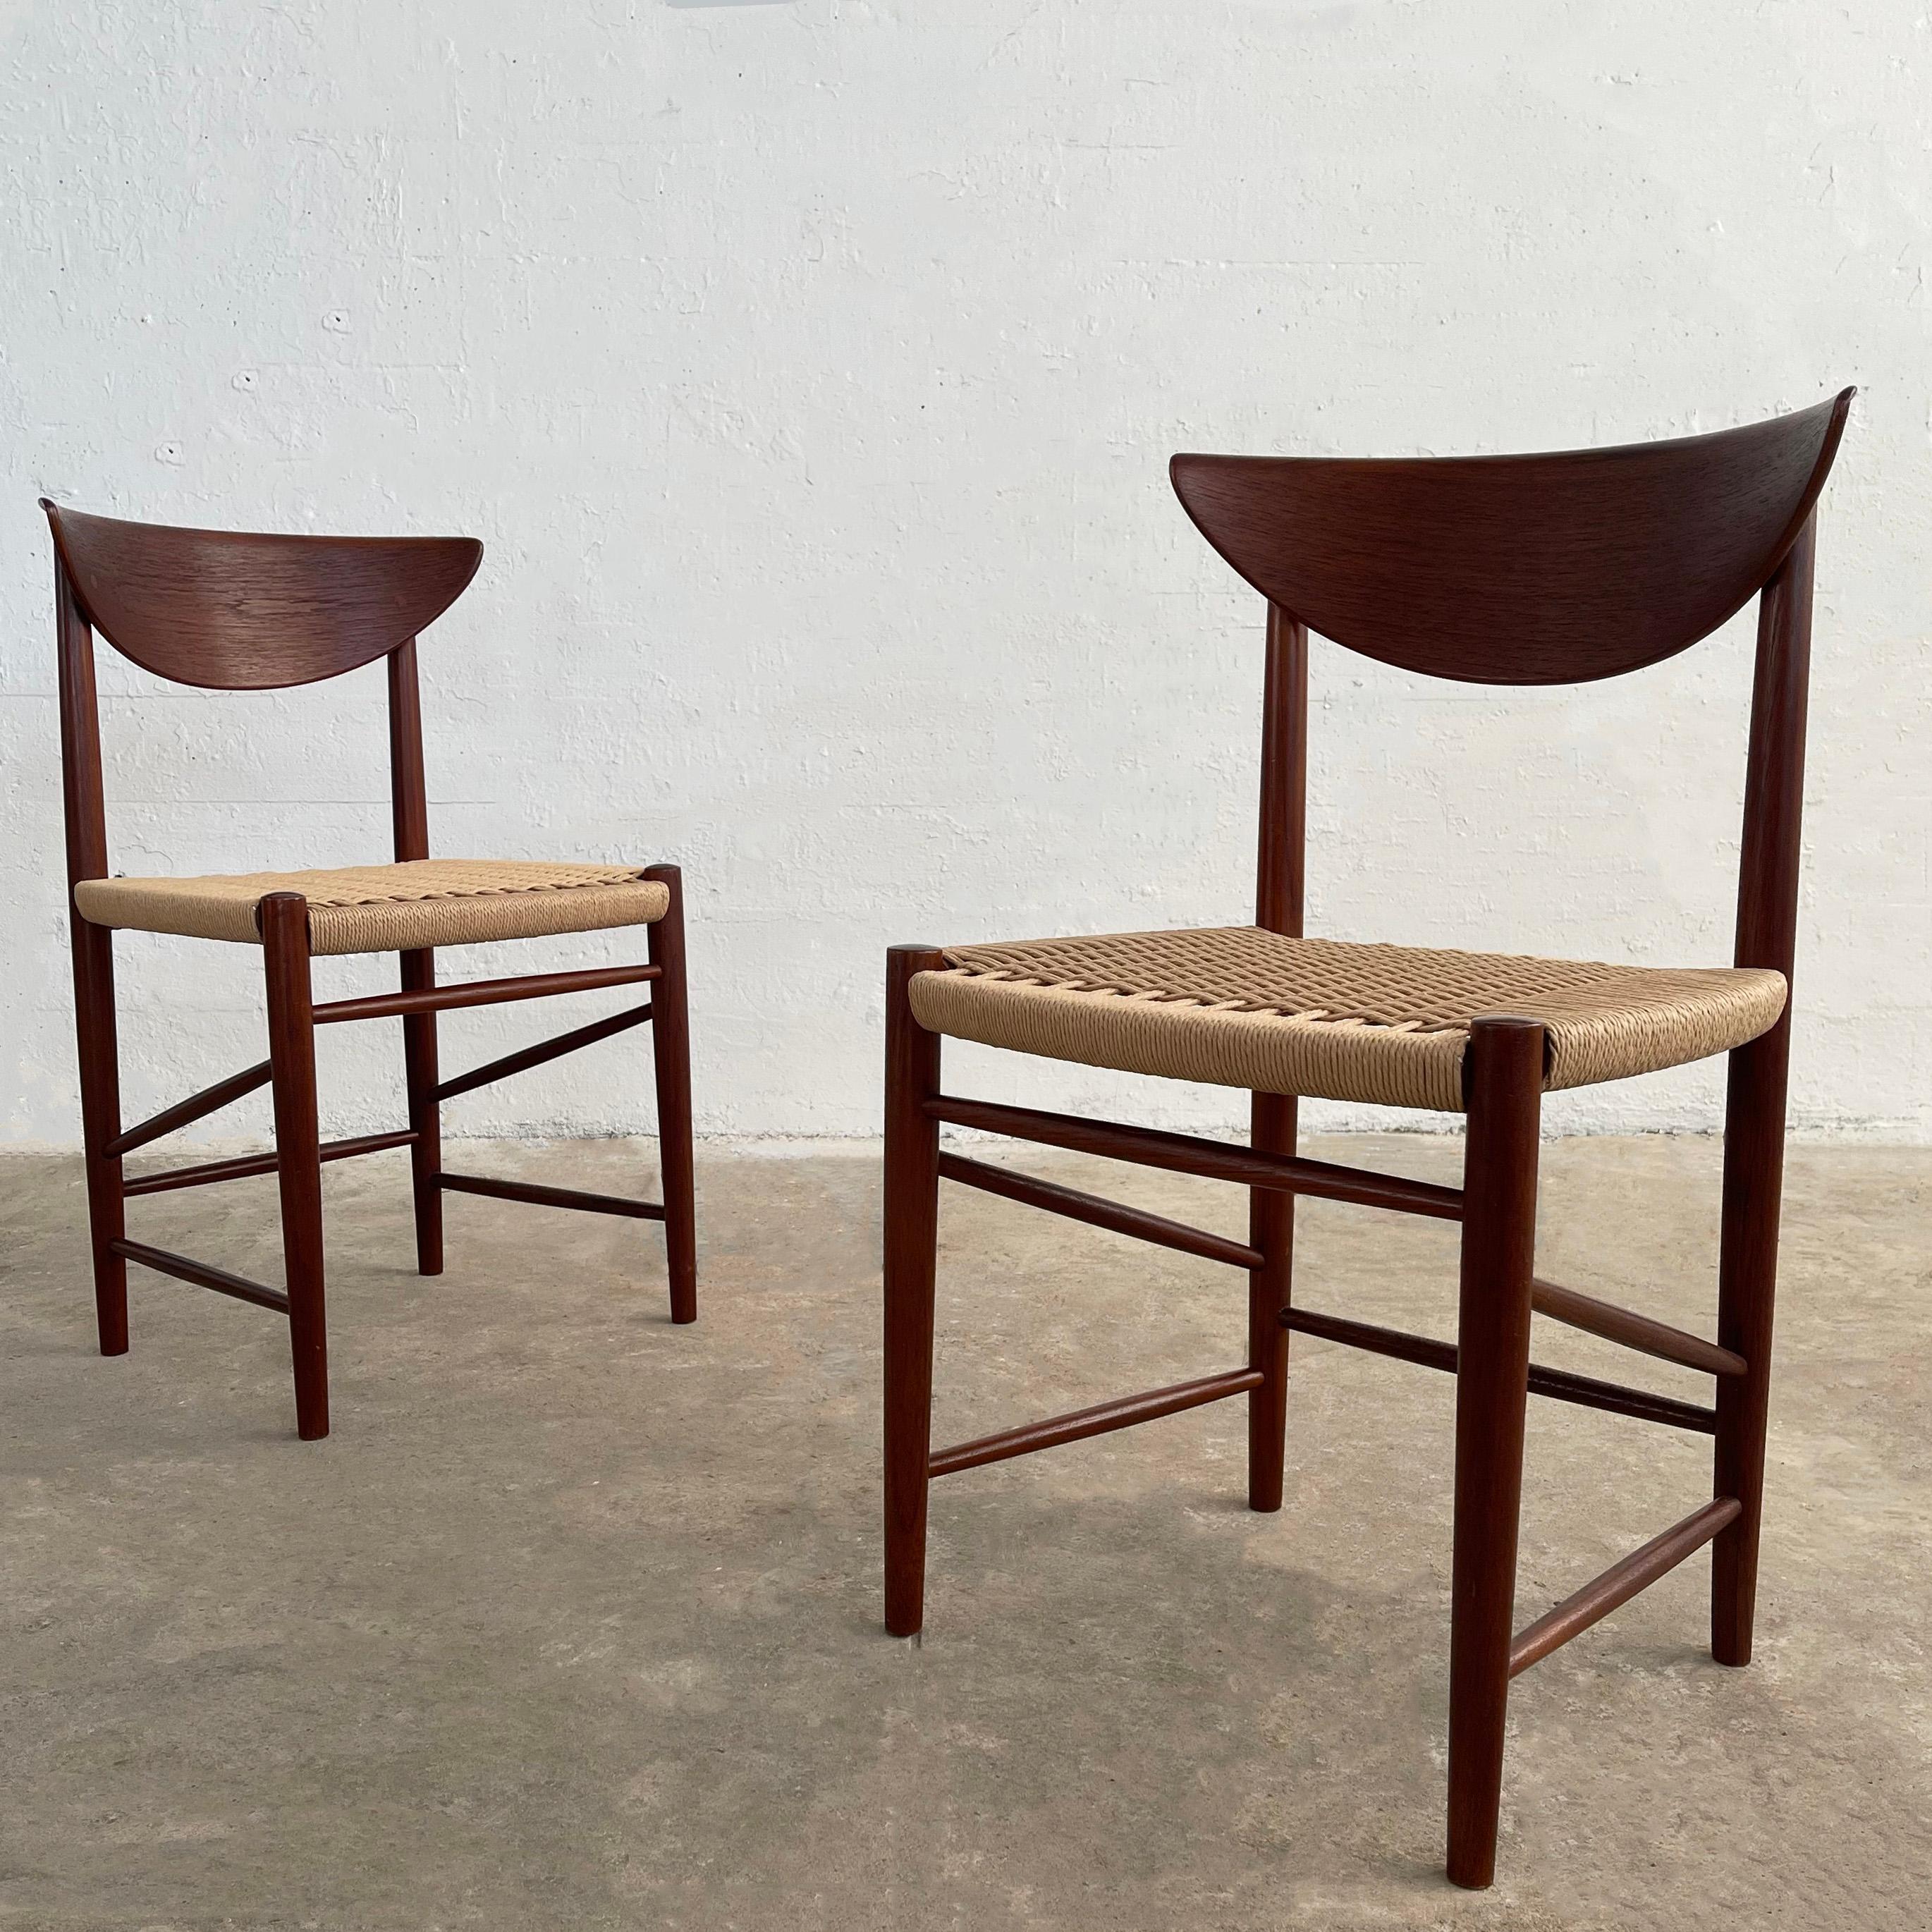 Paire de superbes chaises d'appoint pour salle à manger de style moderne scandinave, créées par Peter Hvidt et Orla Molgaard Nielsen pour Soborg Mobelfabrik. Elles sont dotées d'une structure en teck foncé nouvellement finie et d'un dossier en forme